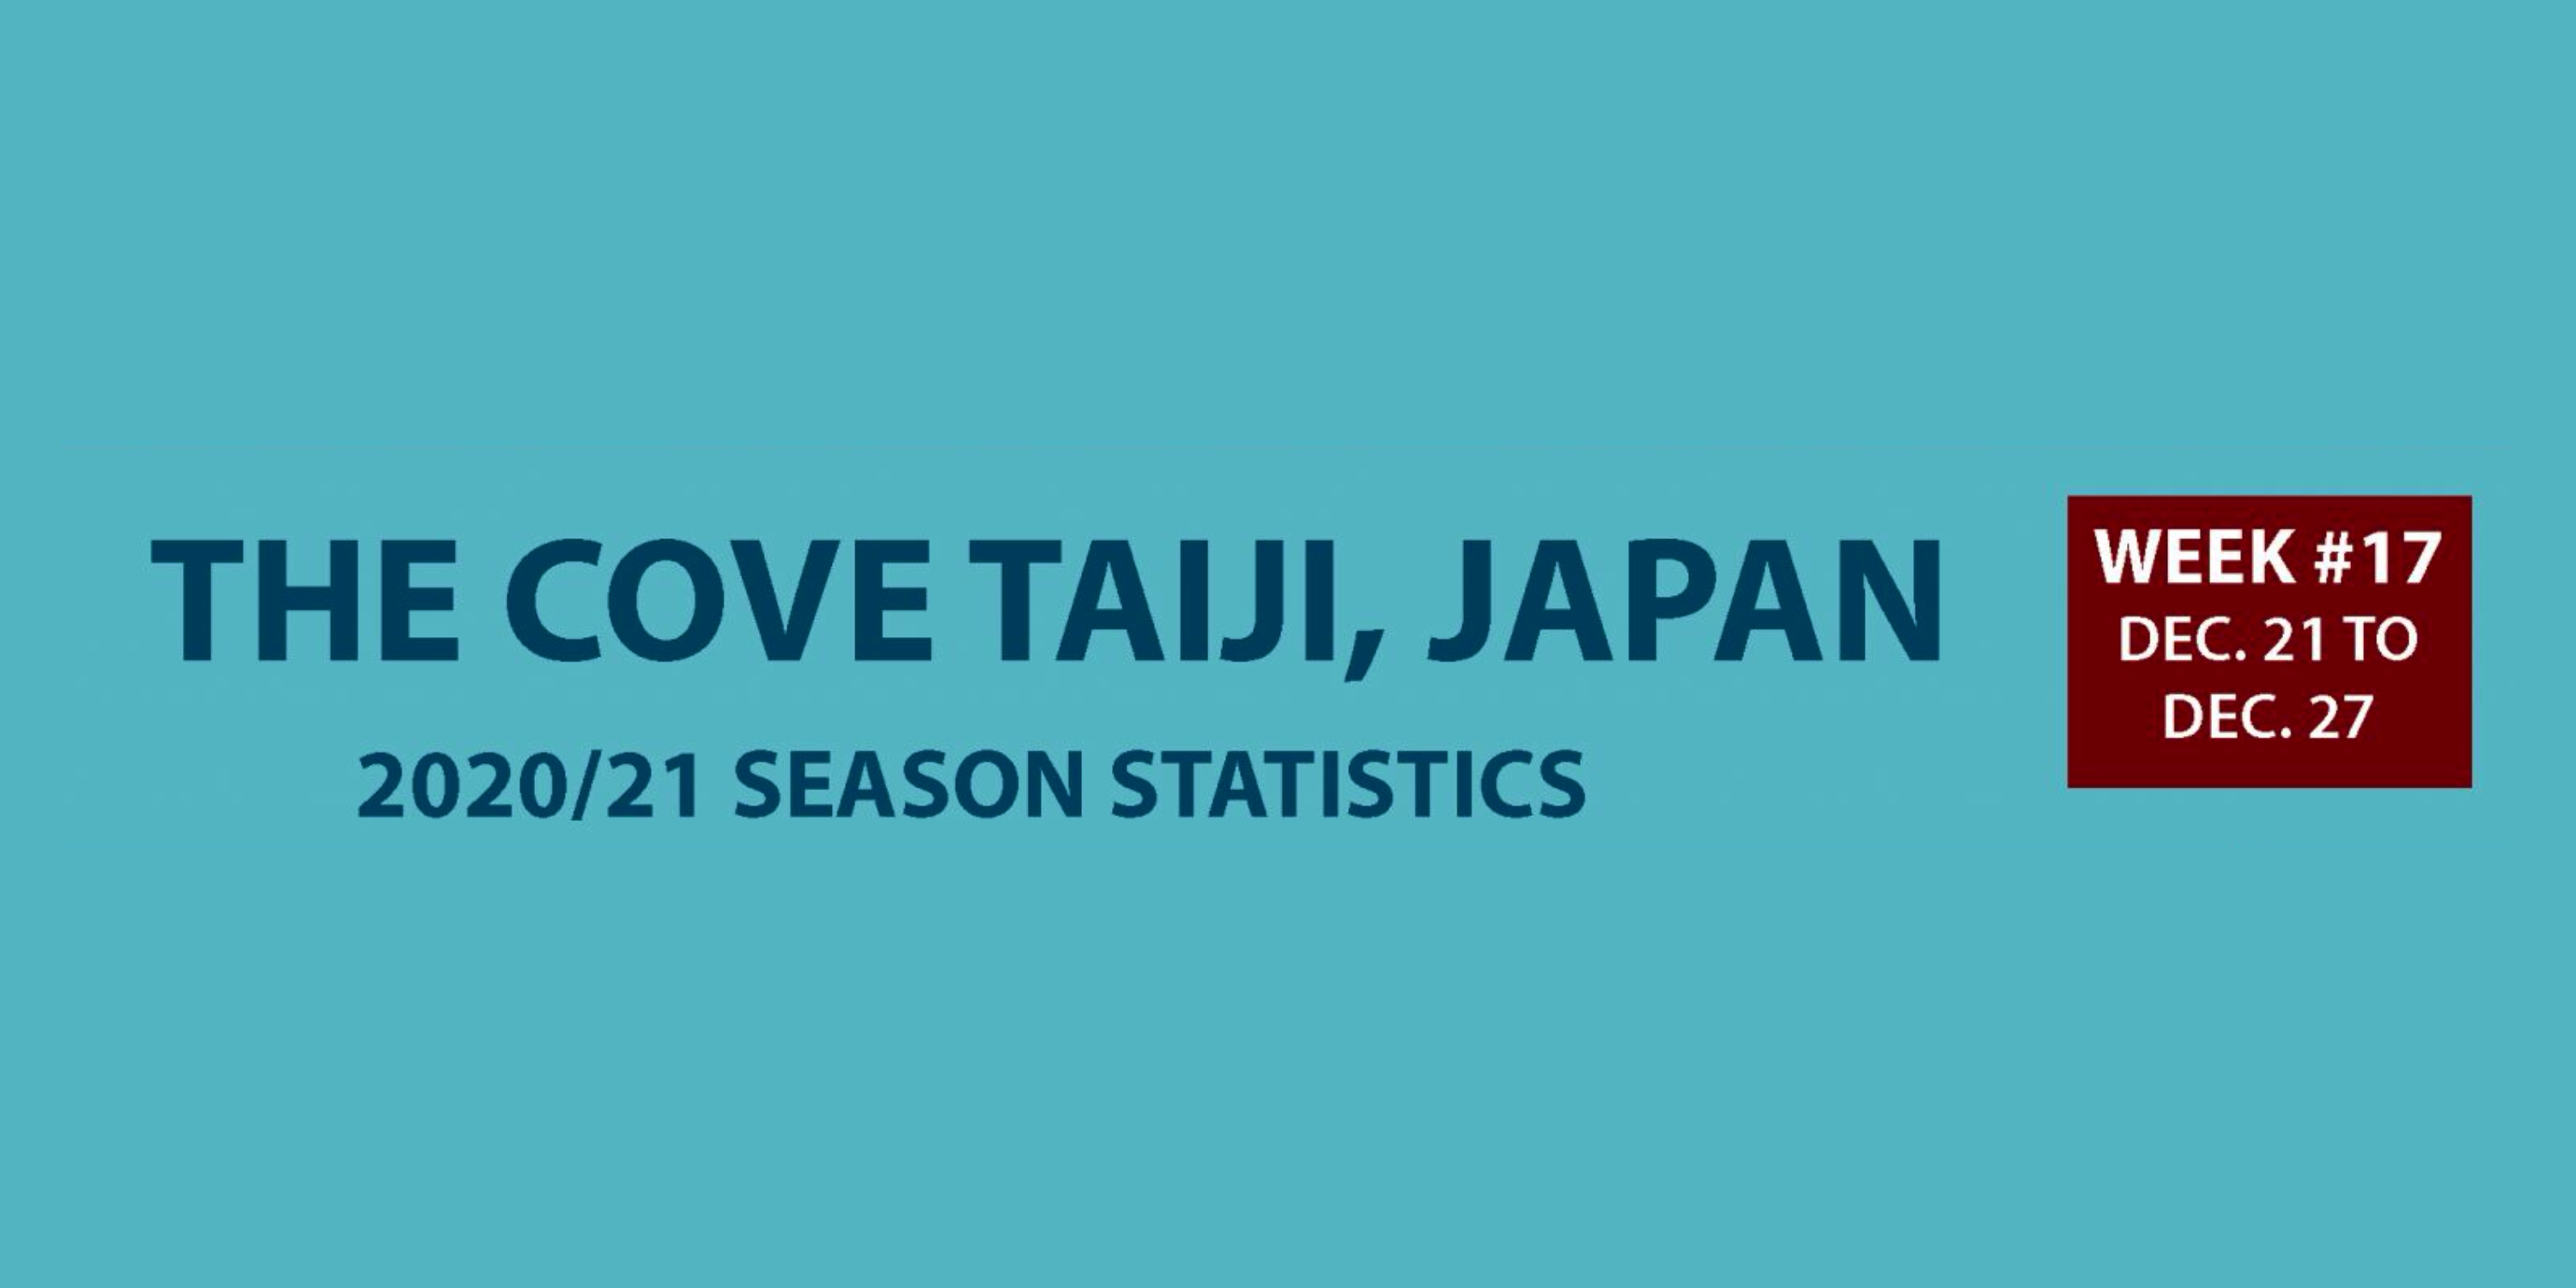 Chasse au dauphin à Taïji (Japon) – Bilan semaine du 21 au 27 décembre 2020 #17